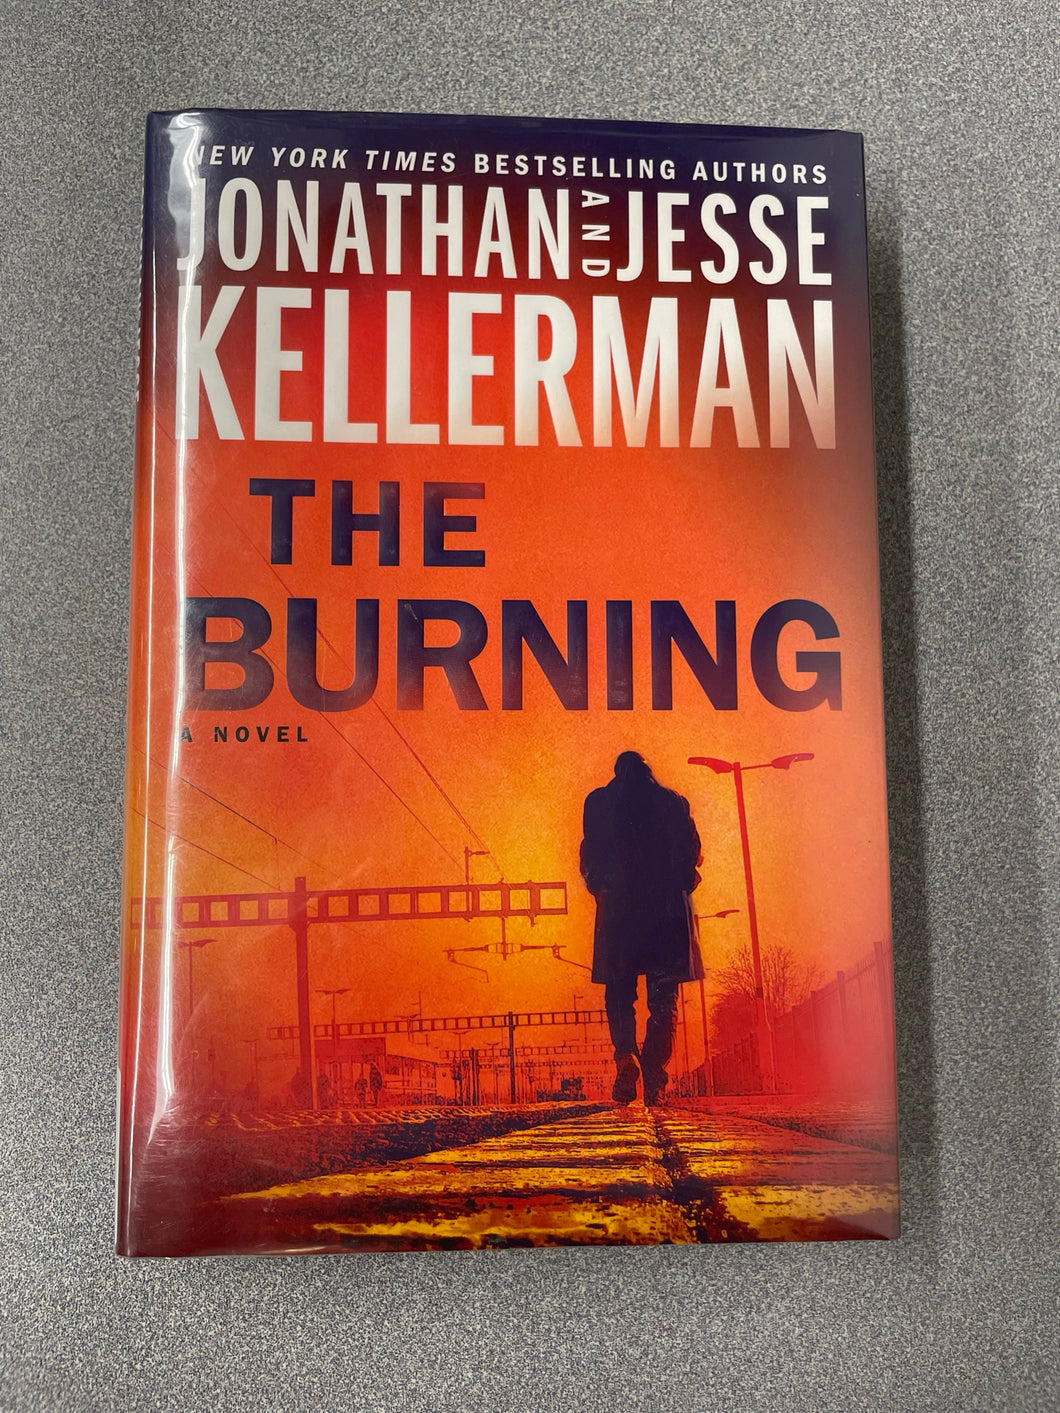 Kellerman, Jonathan and Jesse Kellerman, The Burning [2021] RBS 3/23